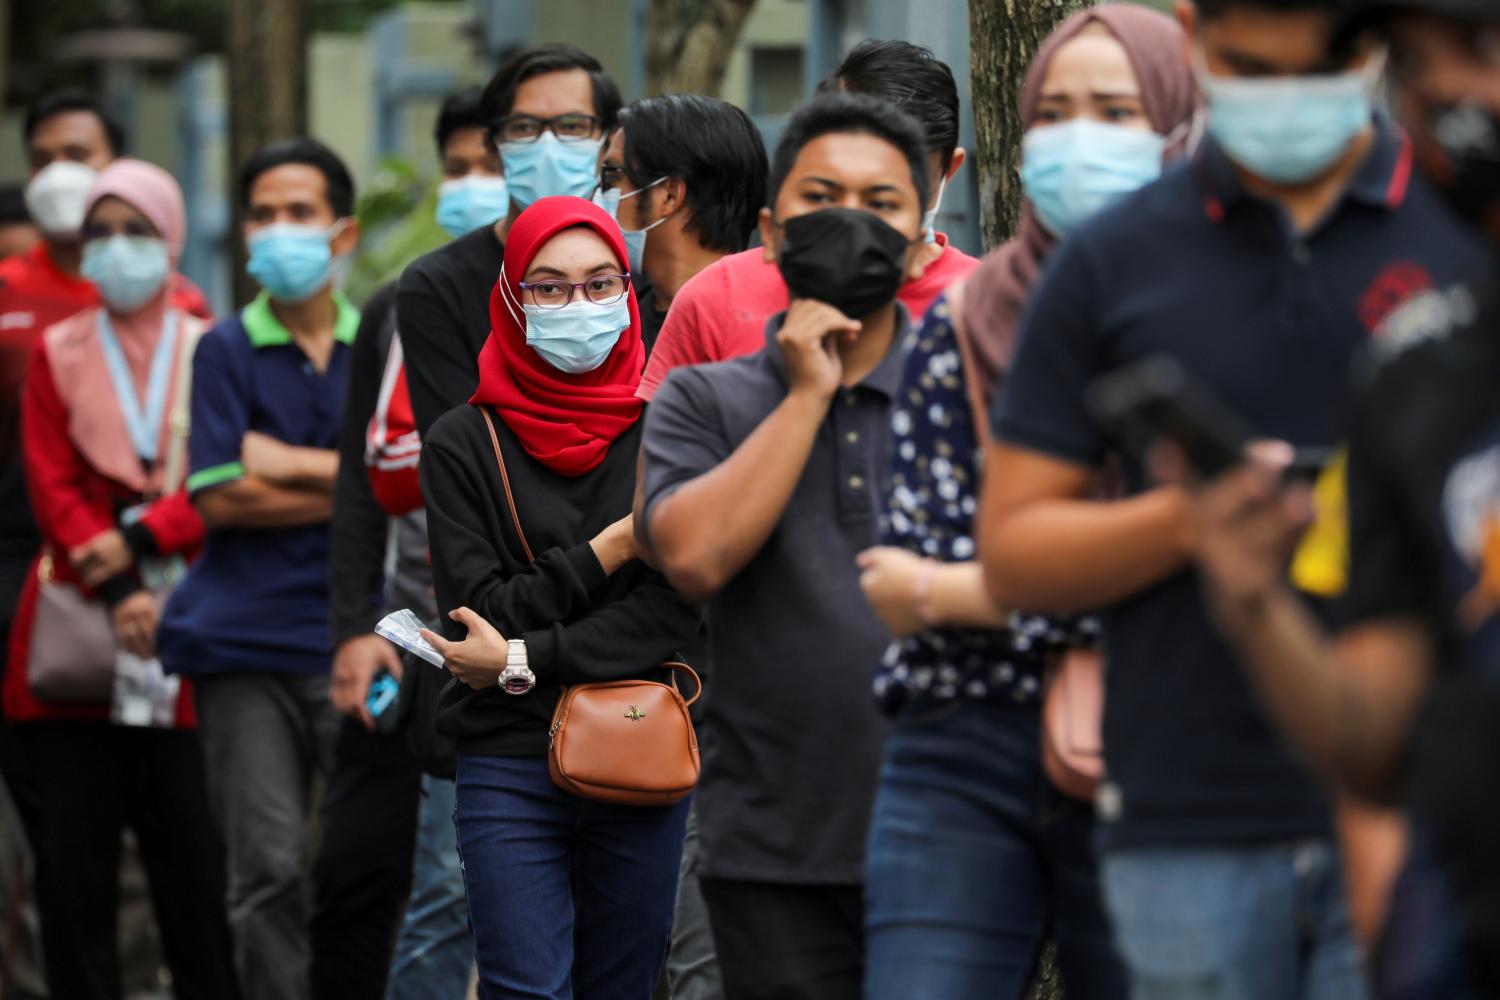 FOTO DE ARCHIVO: Personas esperando para ser examinadas de COVID-19 en Shah Alam, Malasia, el 7 de enero de 2021. REUTERS/Lim Huey Teng